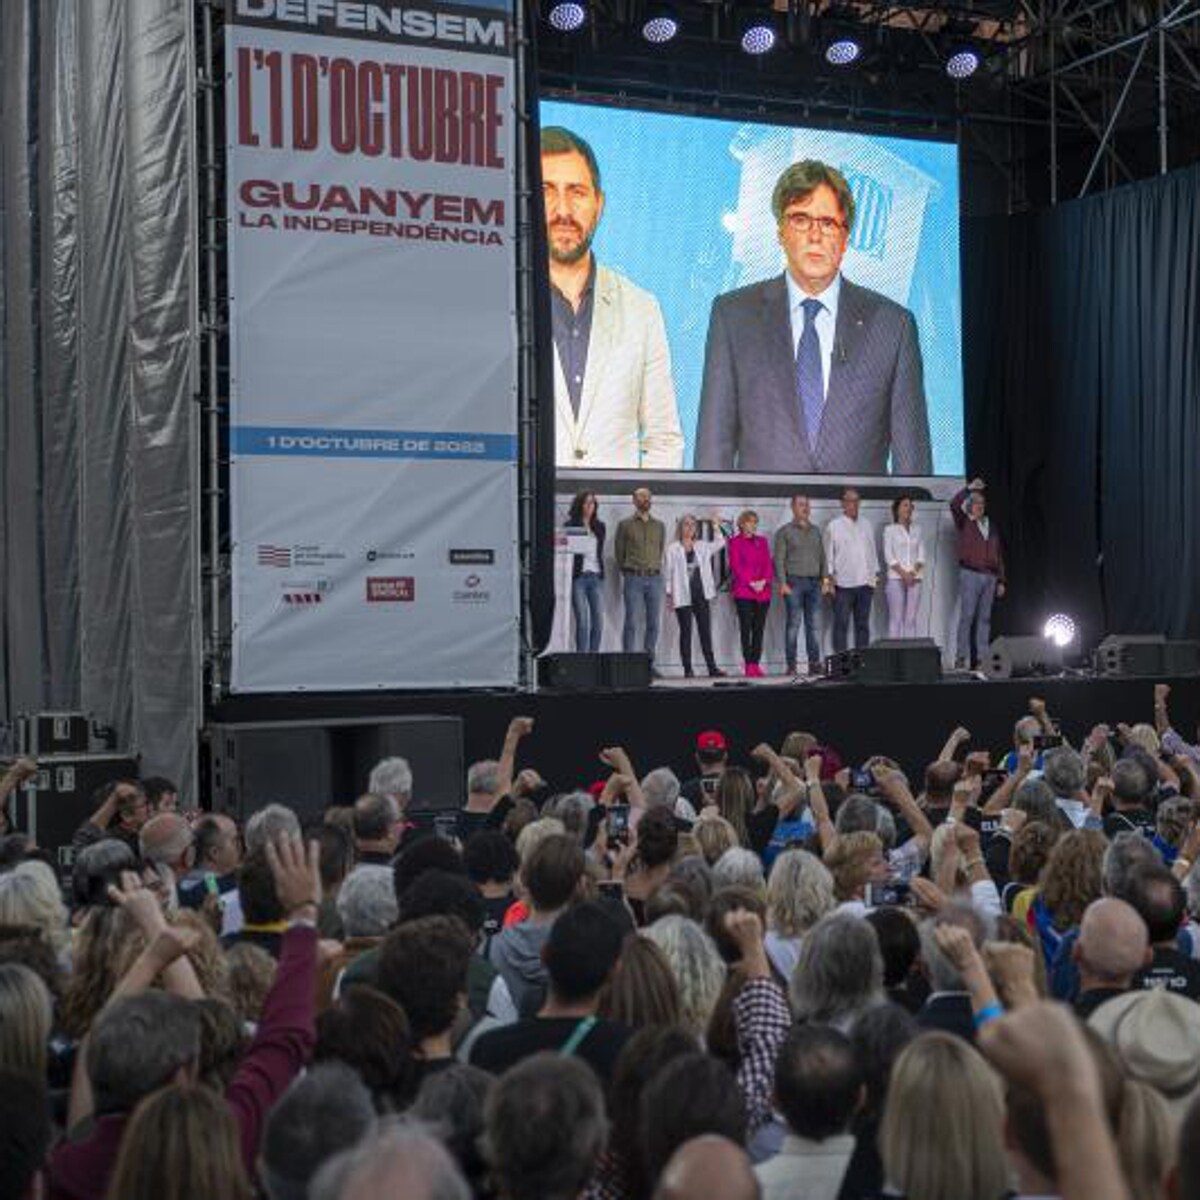 La irrupción de Puigdemont torpedea el intento de recomponer el independentismo